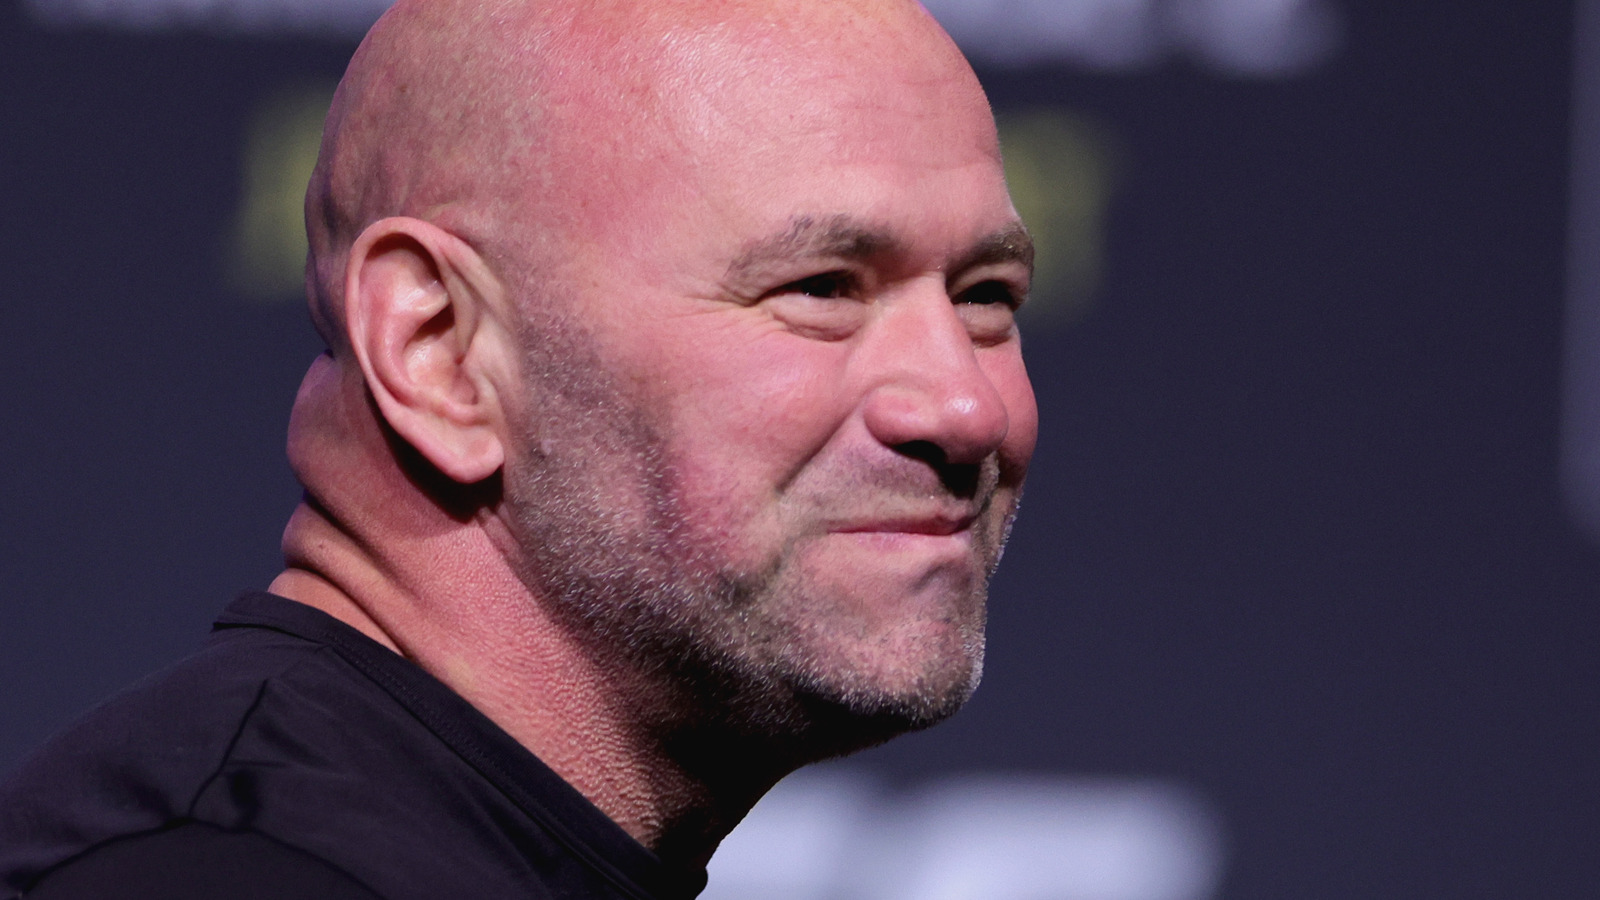 Dana White brinda más detalles sobre la fusión WWE-UFC y dice que "puede llevar a WWE al siguiente nivel"